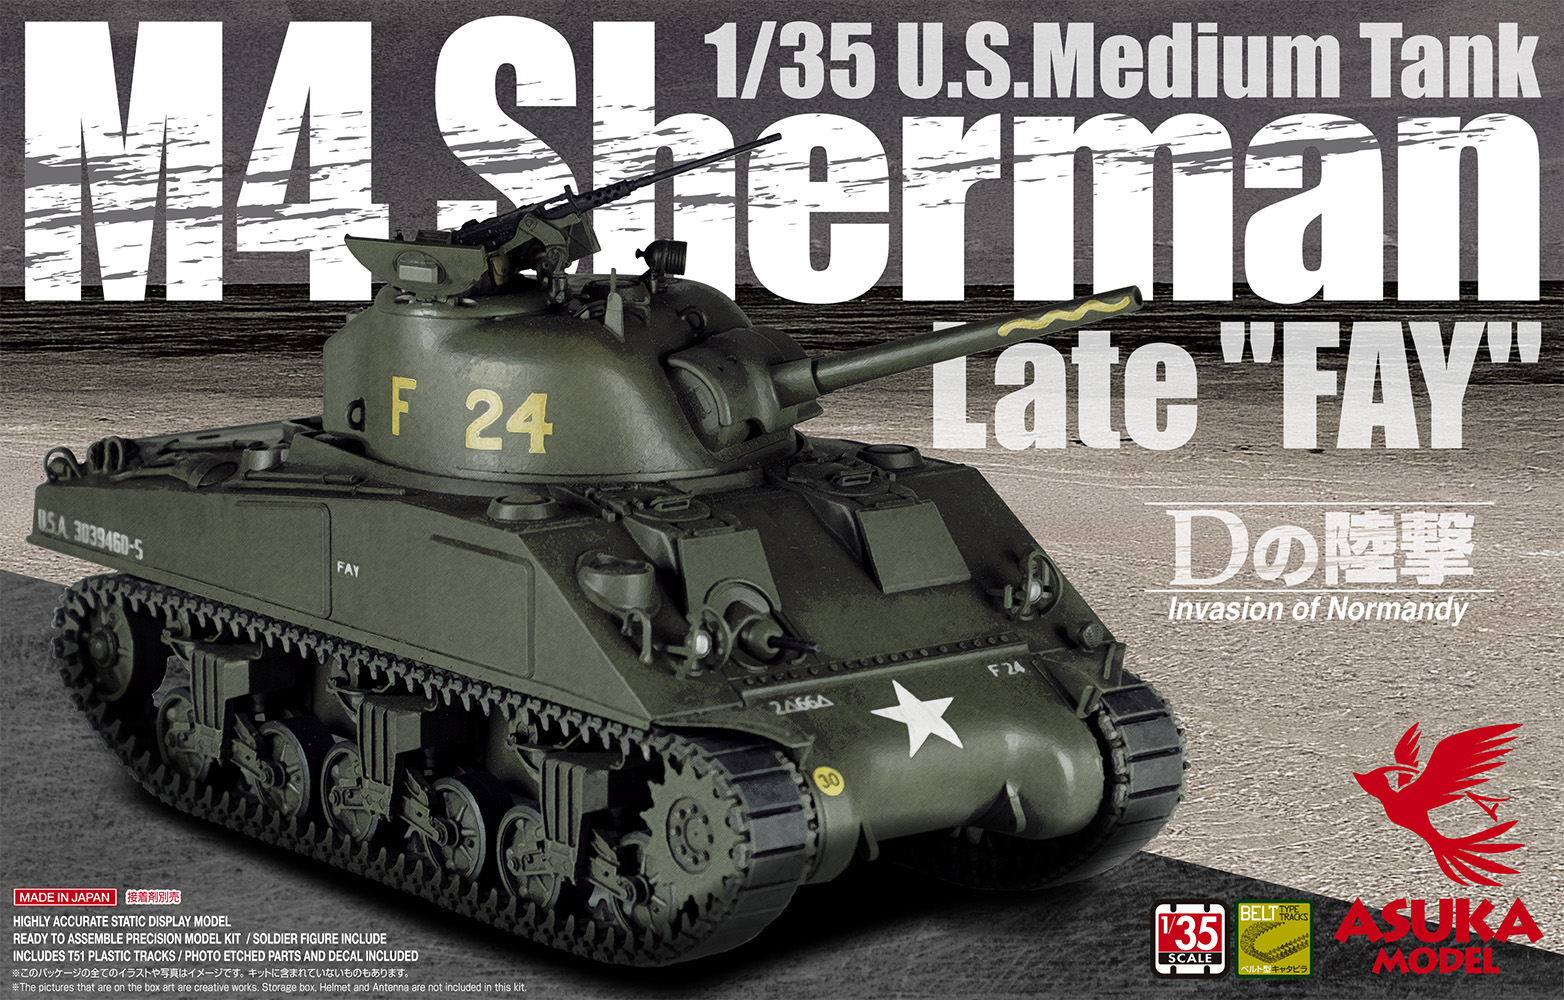 1/35 U.S. Medium Tank M4 Sherman Late “FAY” #35-032 | Asukamodel ...